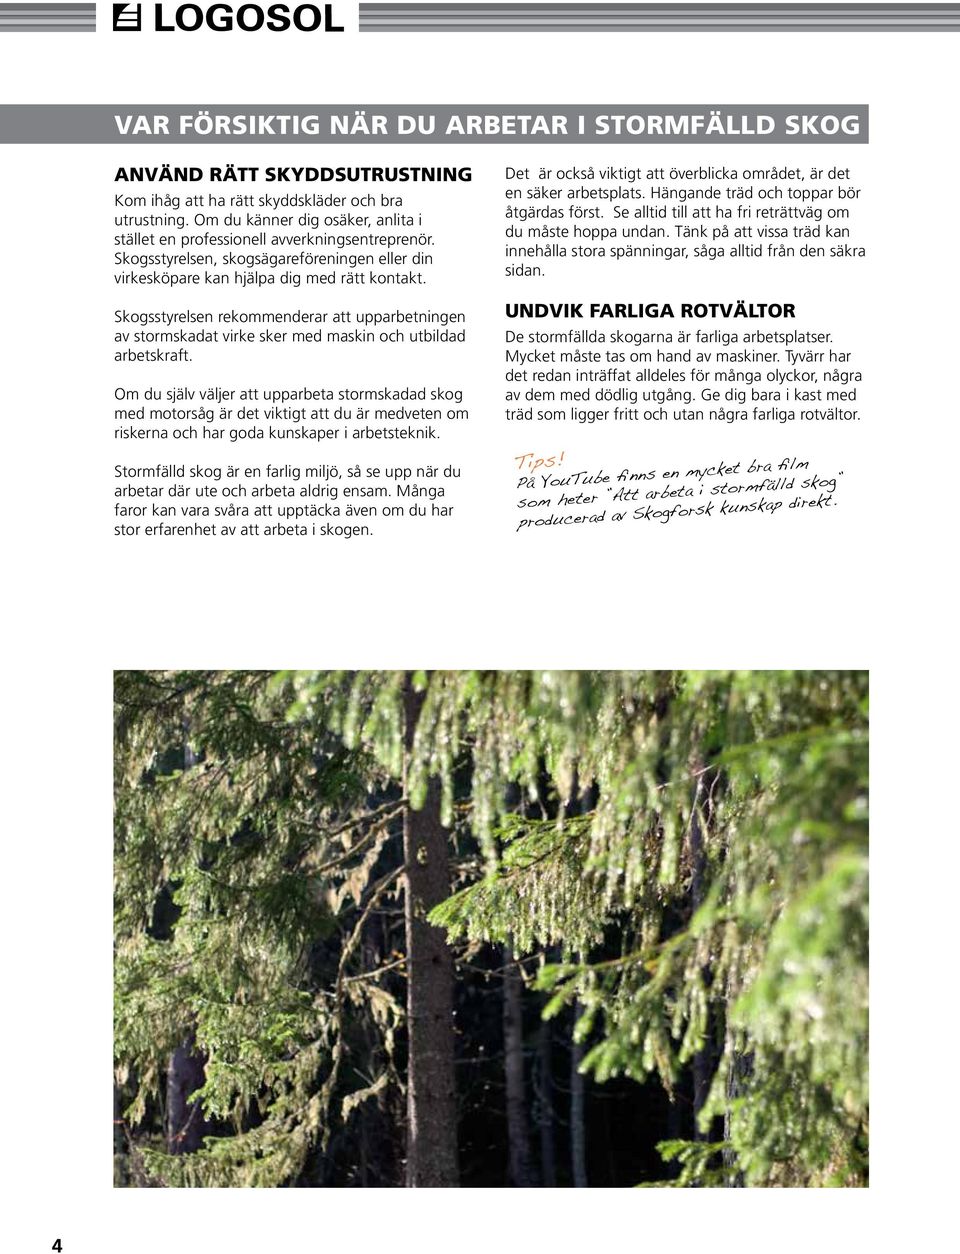 Skogsstyrelsen rekommenderar att upparbetningen av stormskadat virke sker med maskin och utbildad arbetskraft.